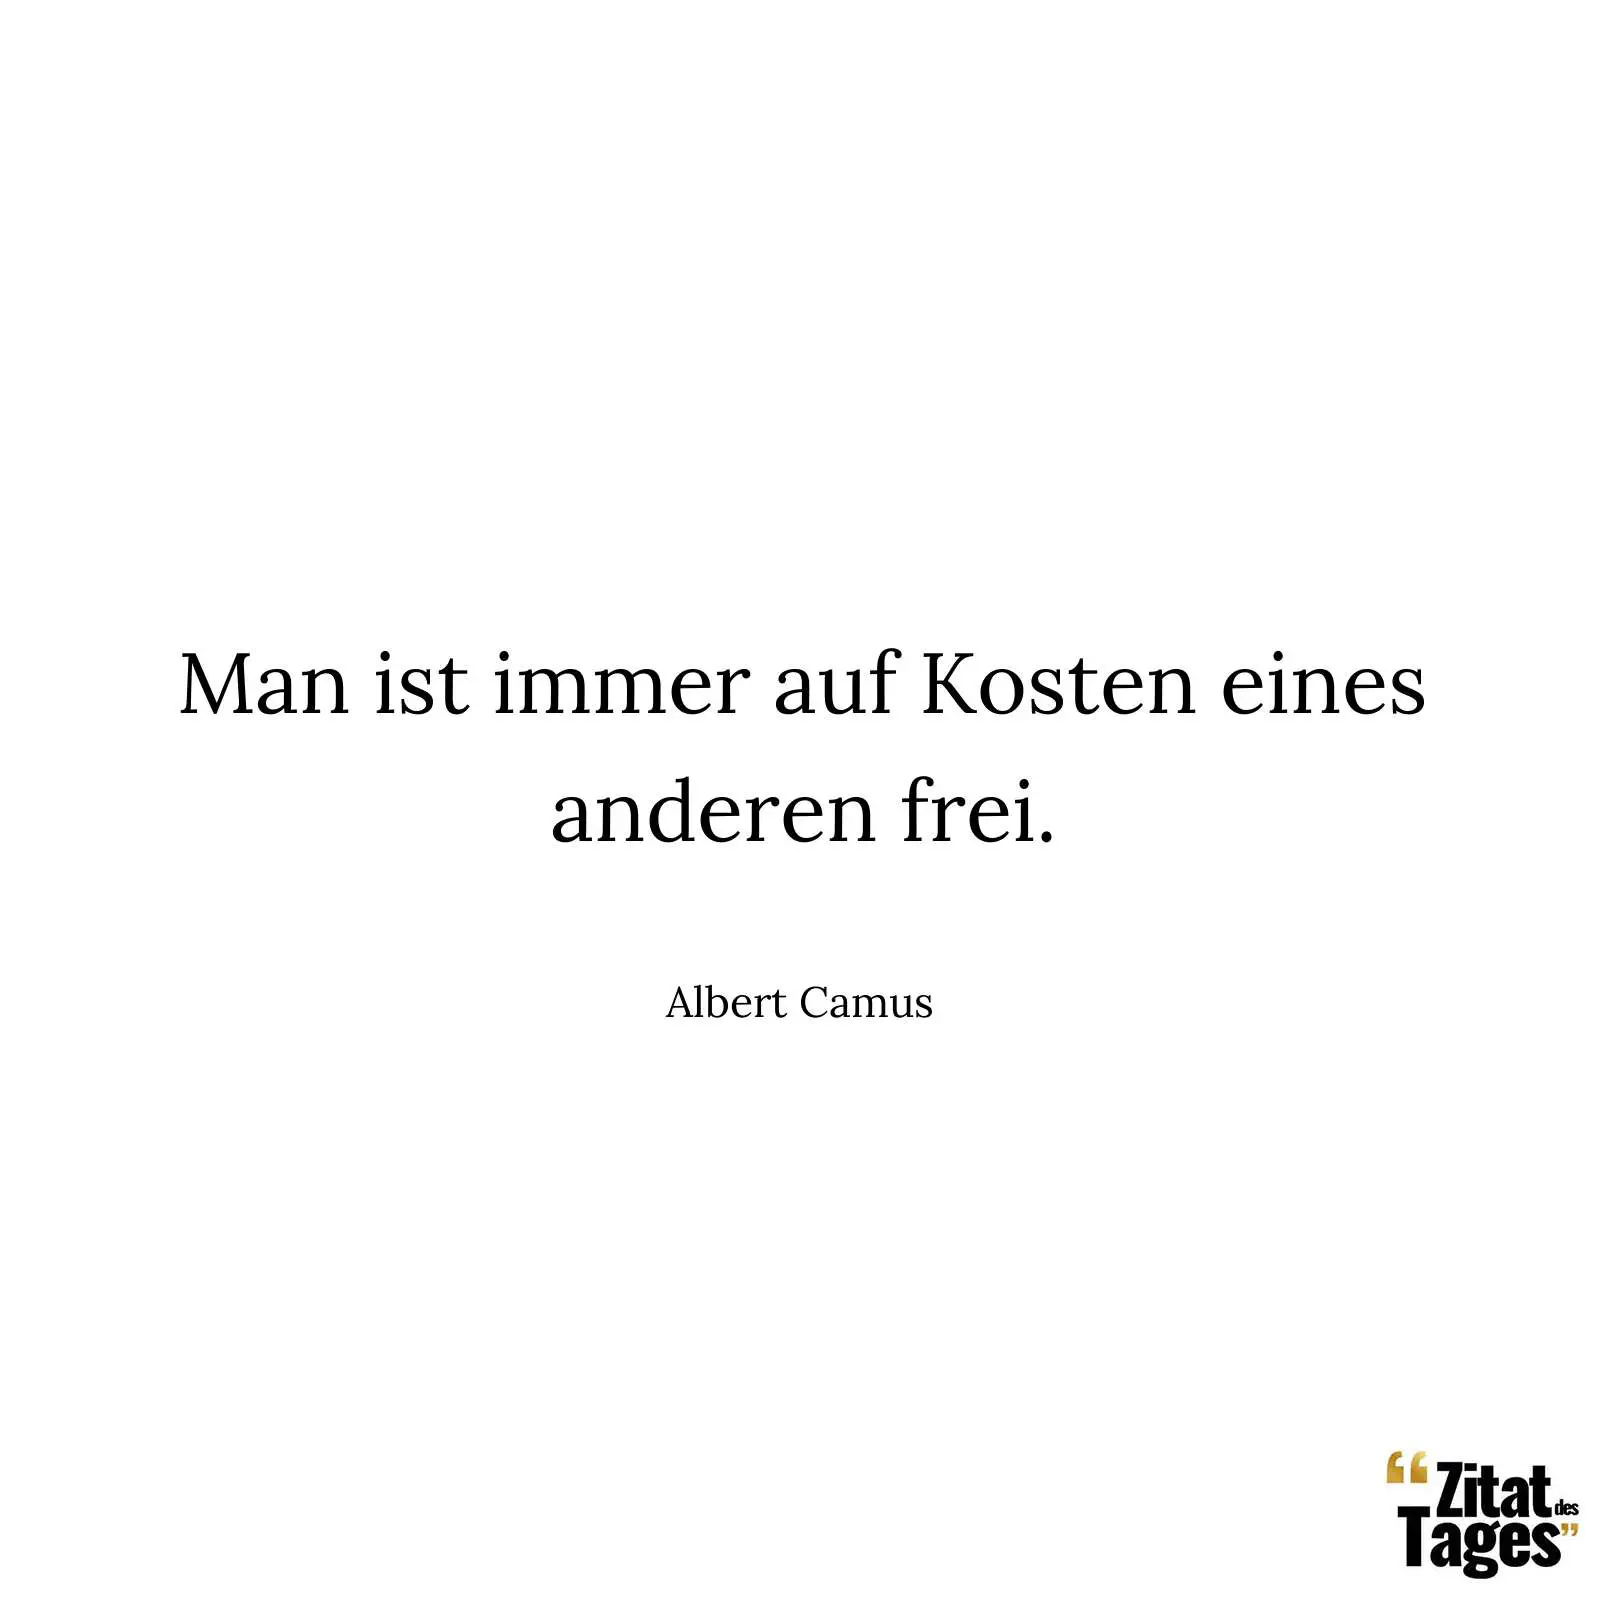 Man ist immer auf Kosten eines anderen frei. - Albert Camus